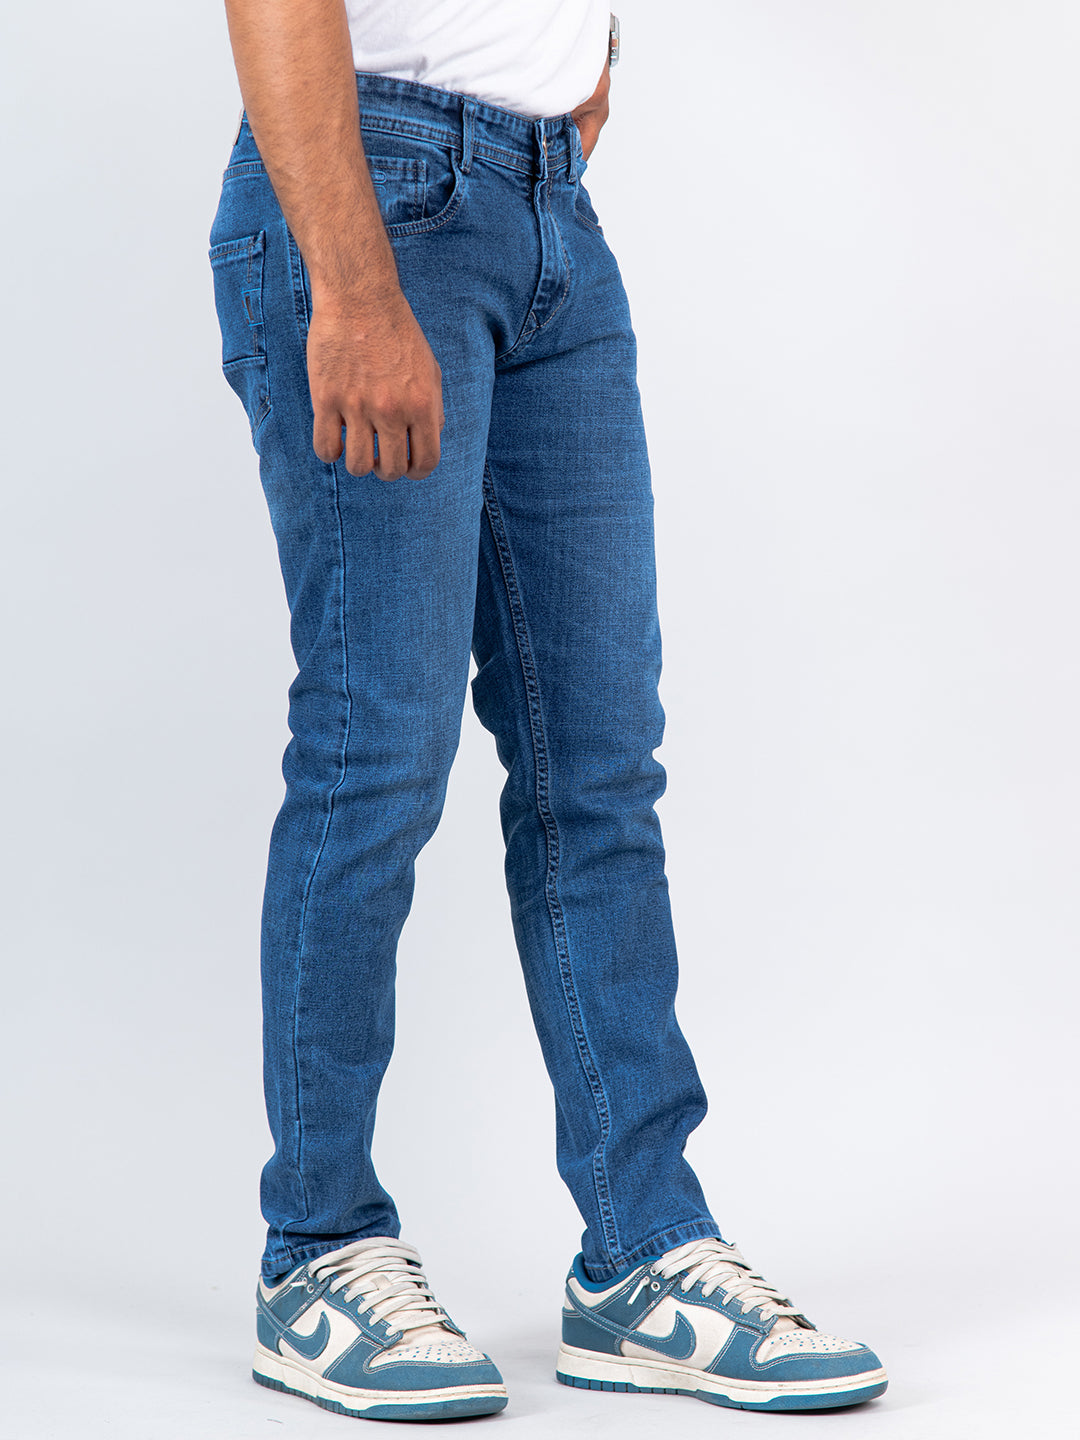 best denim jeans for men